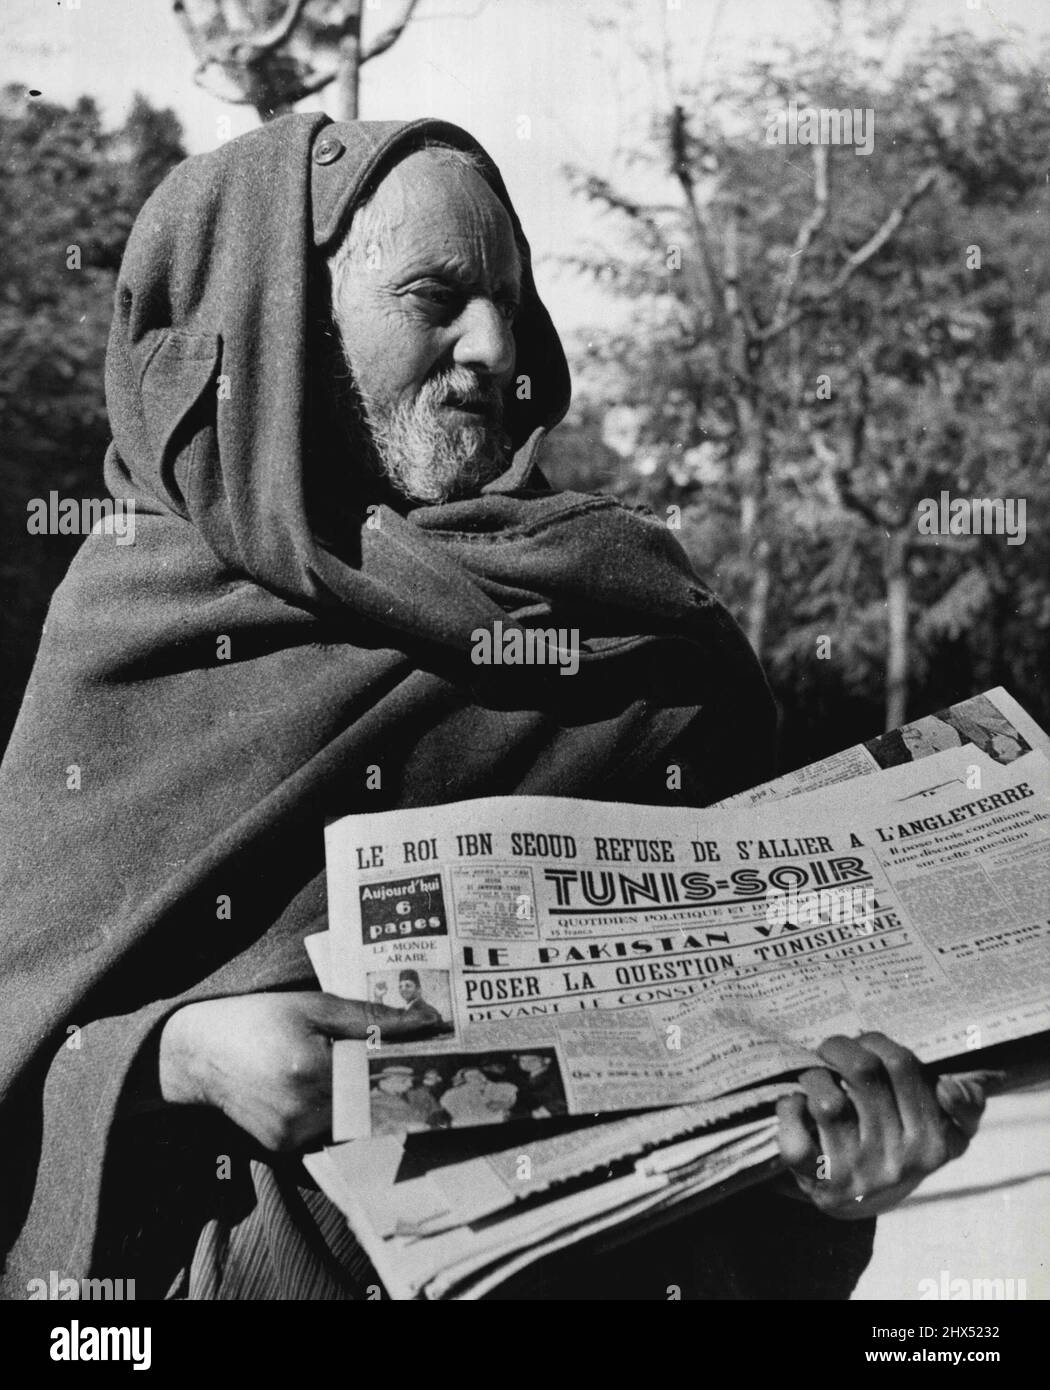 A Hooded Arab 'Newsboy' faucons un des journaux de langue française dans une voix hurlant dans le centre de Tunis. Notez que le titre joue le rejet de l'alliance avec l'Angleterre par le roi lbn Saud. 29 février 1952. (Photo de United Press). Banque D'Images